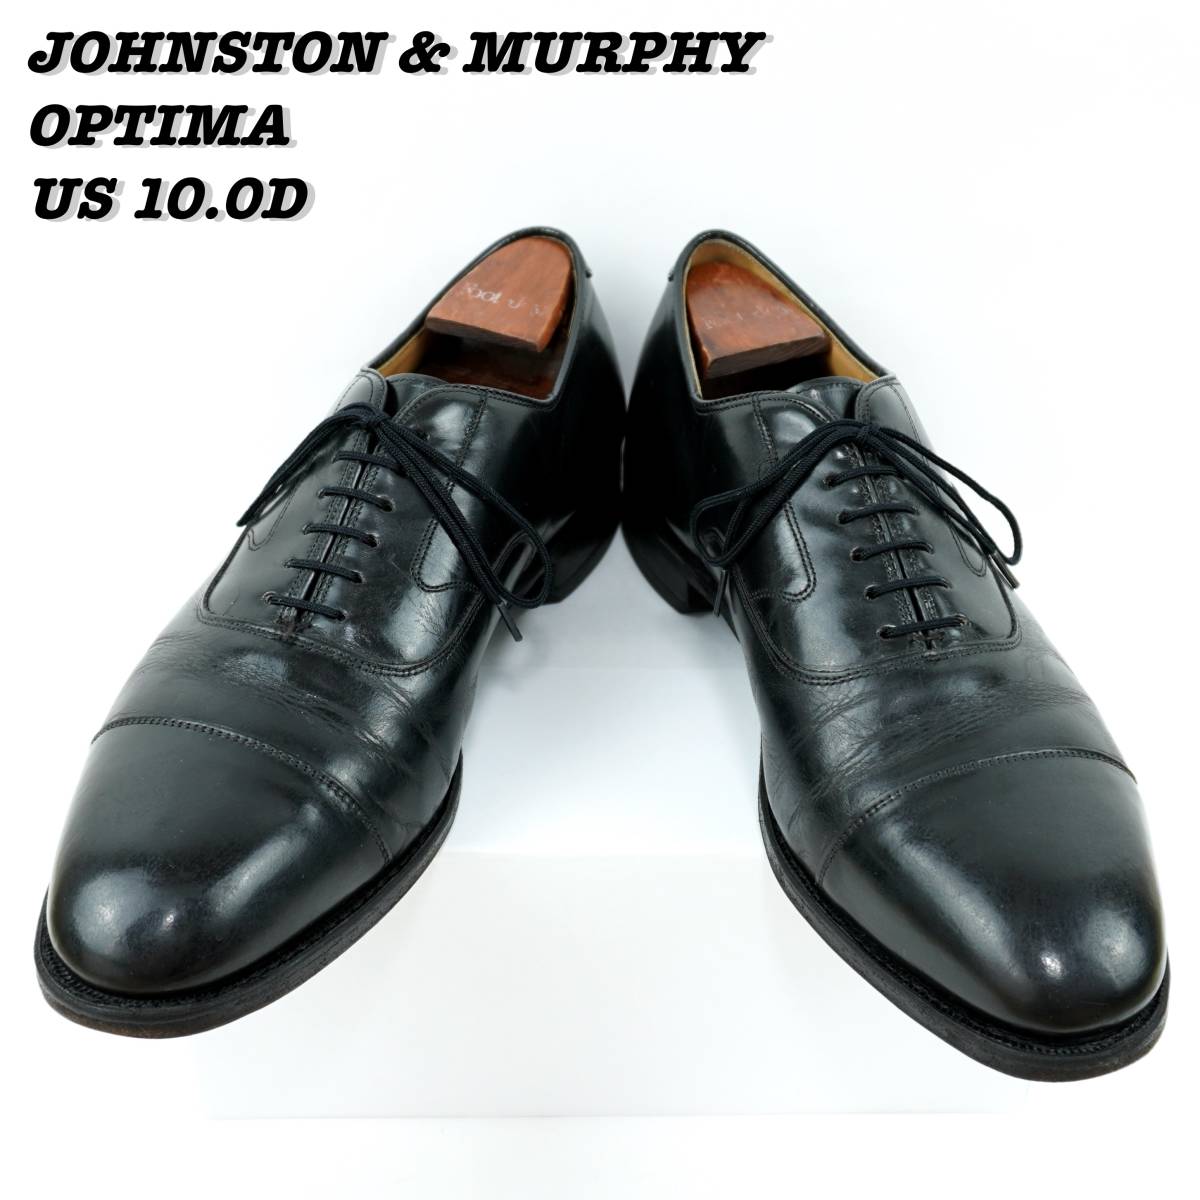 夏セール開催中 MAX80%OFF！ Johnston 1990年代 キャップトゥ オプティマ ジョンマー ジョンストンアンドマーフィー US10.0D 1990s Shoes Toe Cap OPTIMA Murphy & 28.0cm以上